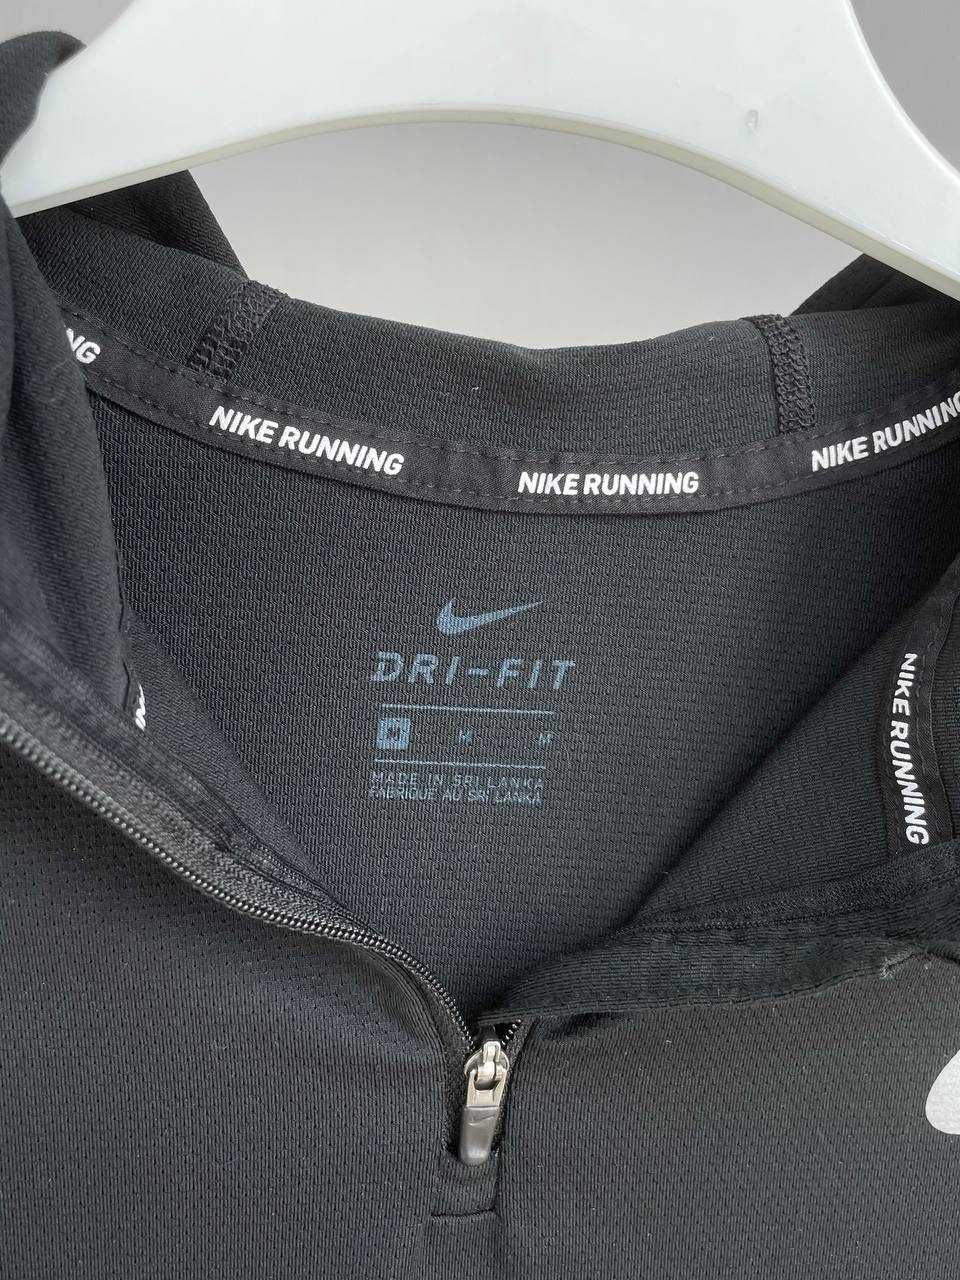 М Жіноча вкорочена спортивна кофта Nike dry-fit термо кофта оригинал